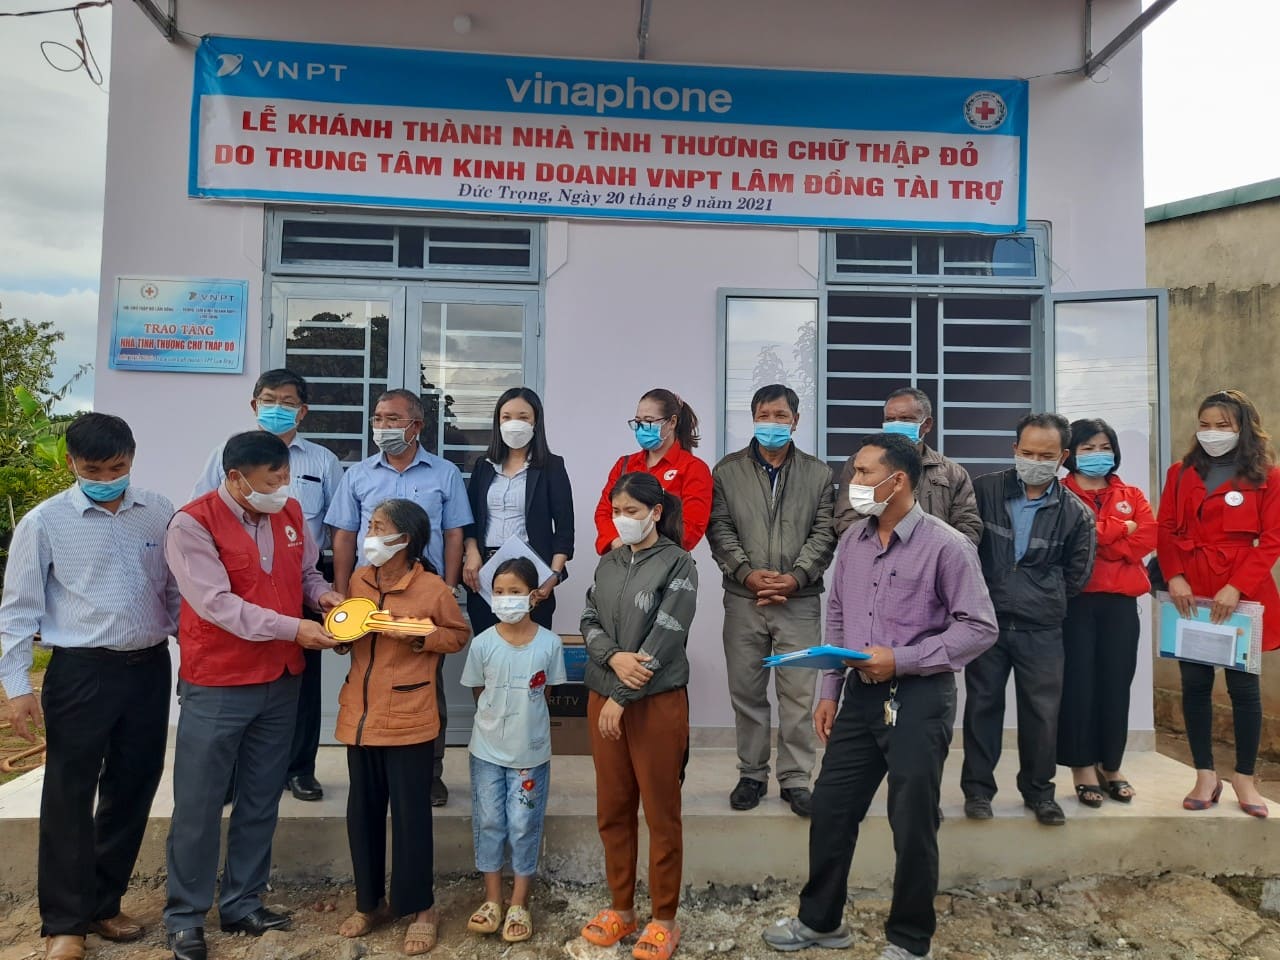 Lâm Đồng: Khánh thành nhà tình thương Chữ thập đỏ